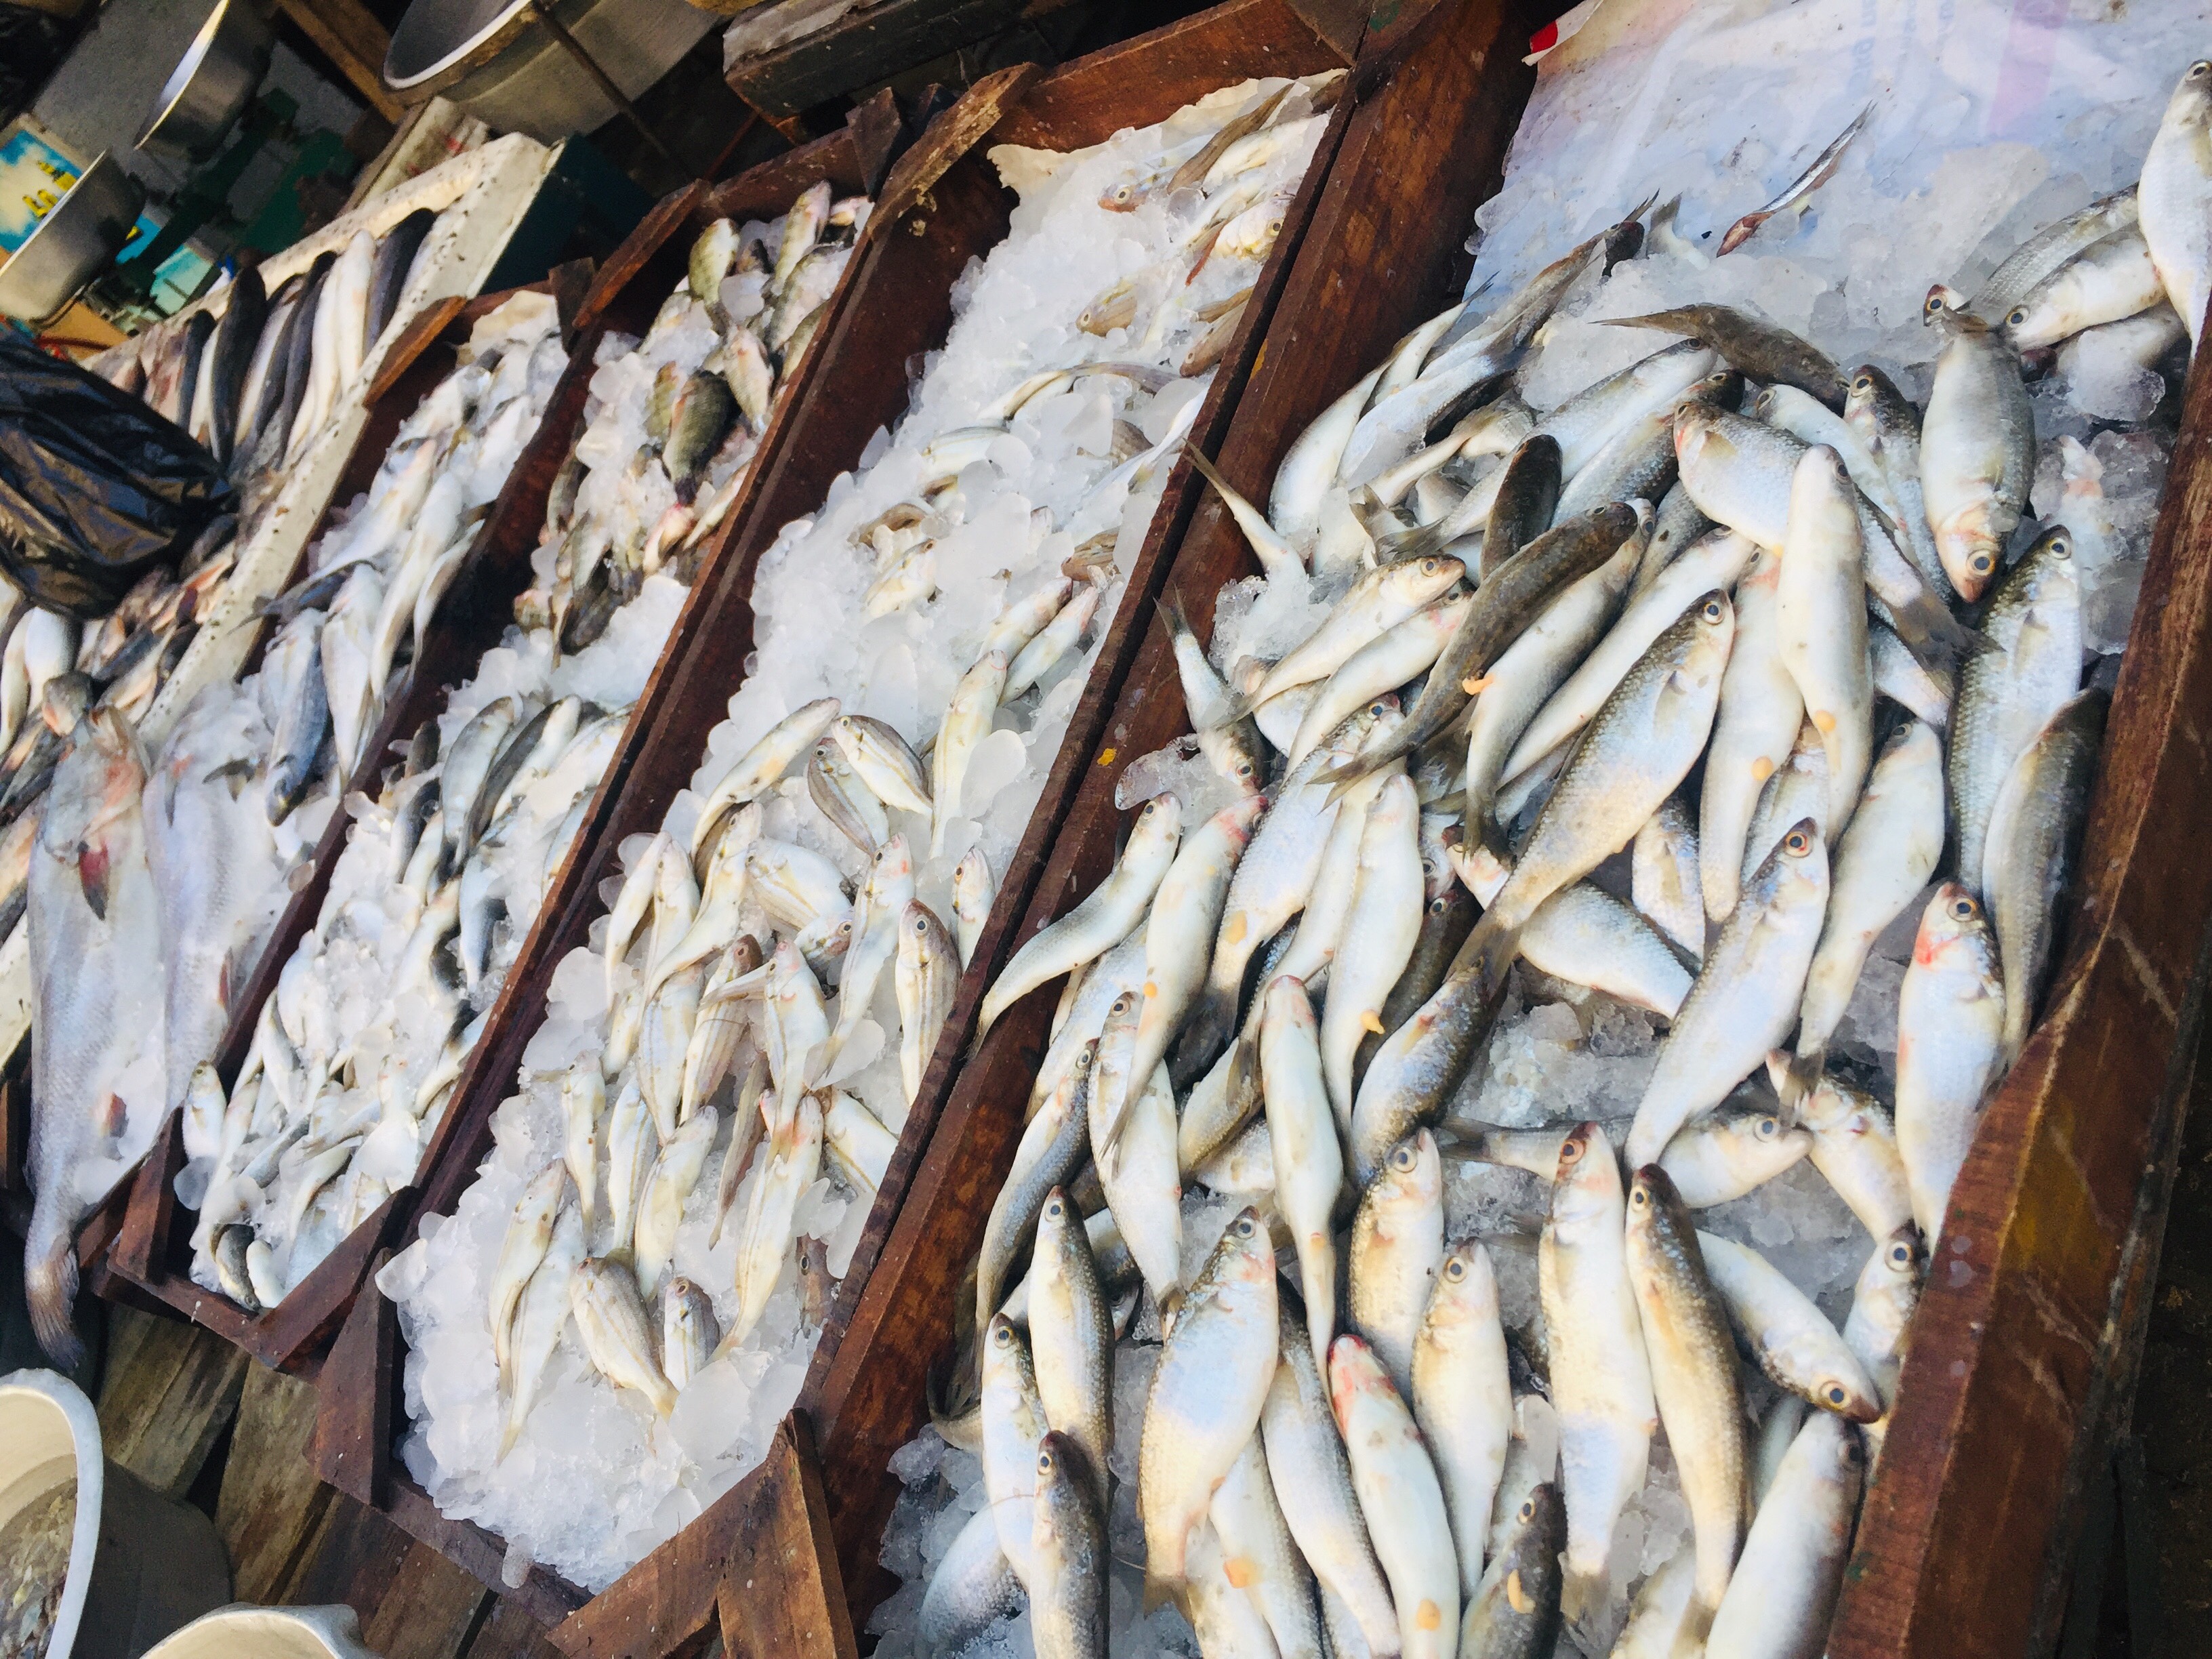  سوق الأسماك بالإسماعيلية (3)